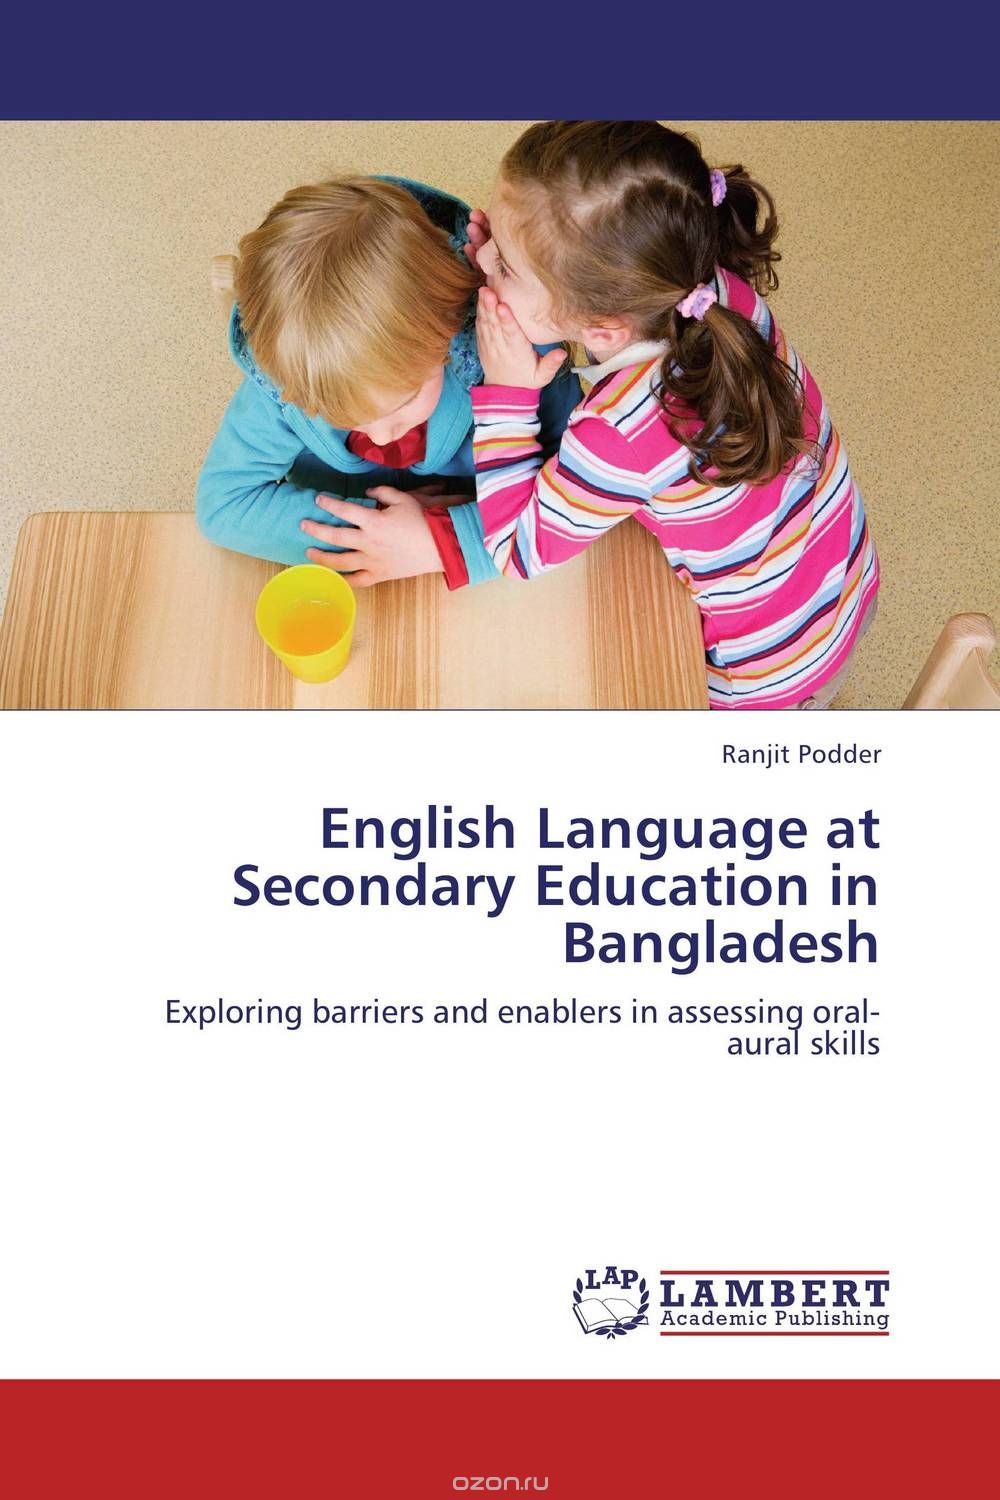 English Language at Secondary Education in Bangladesh